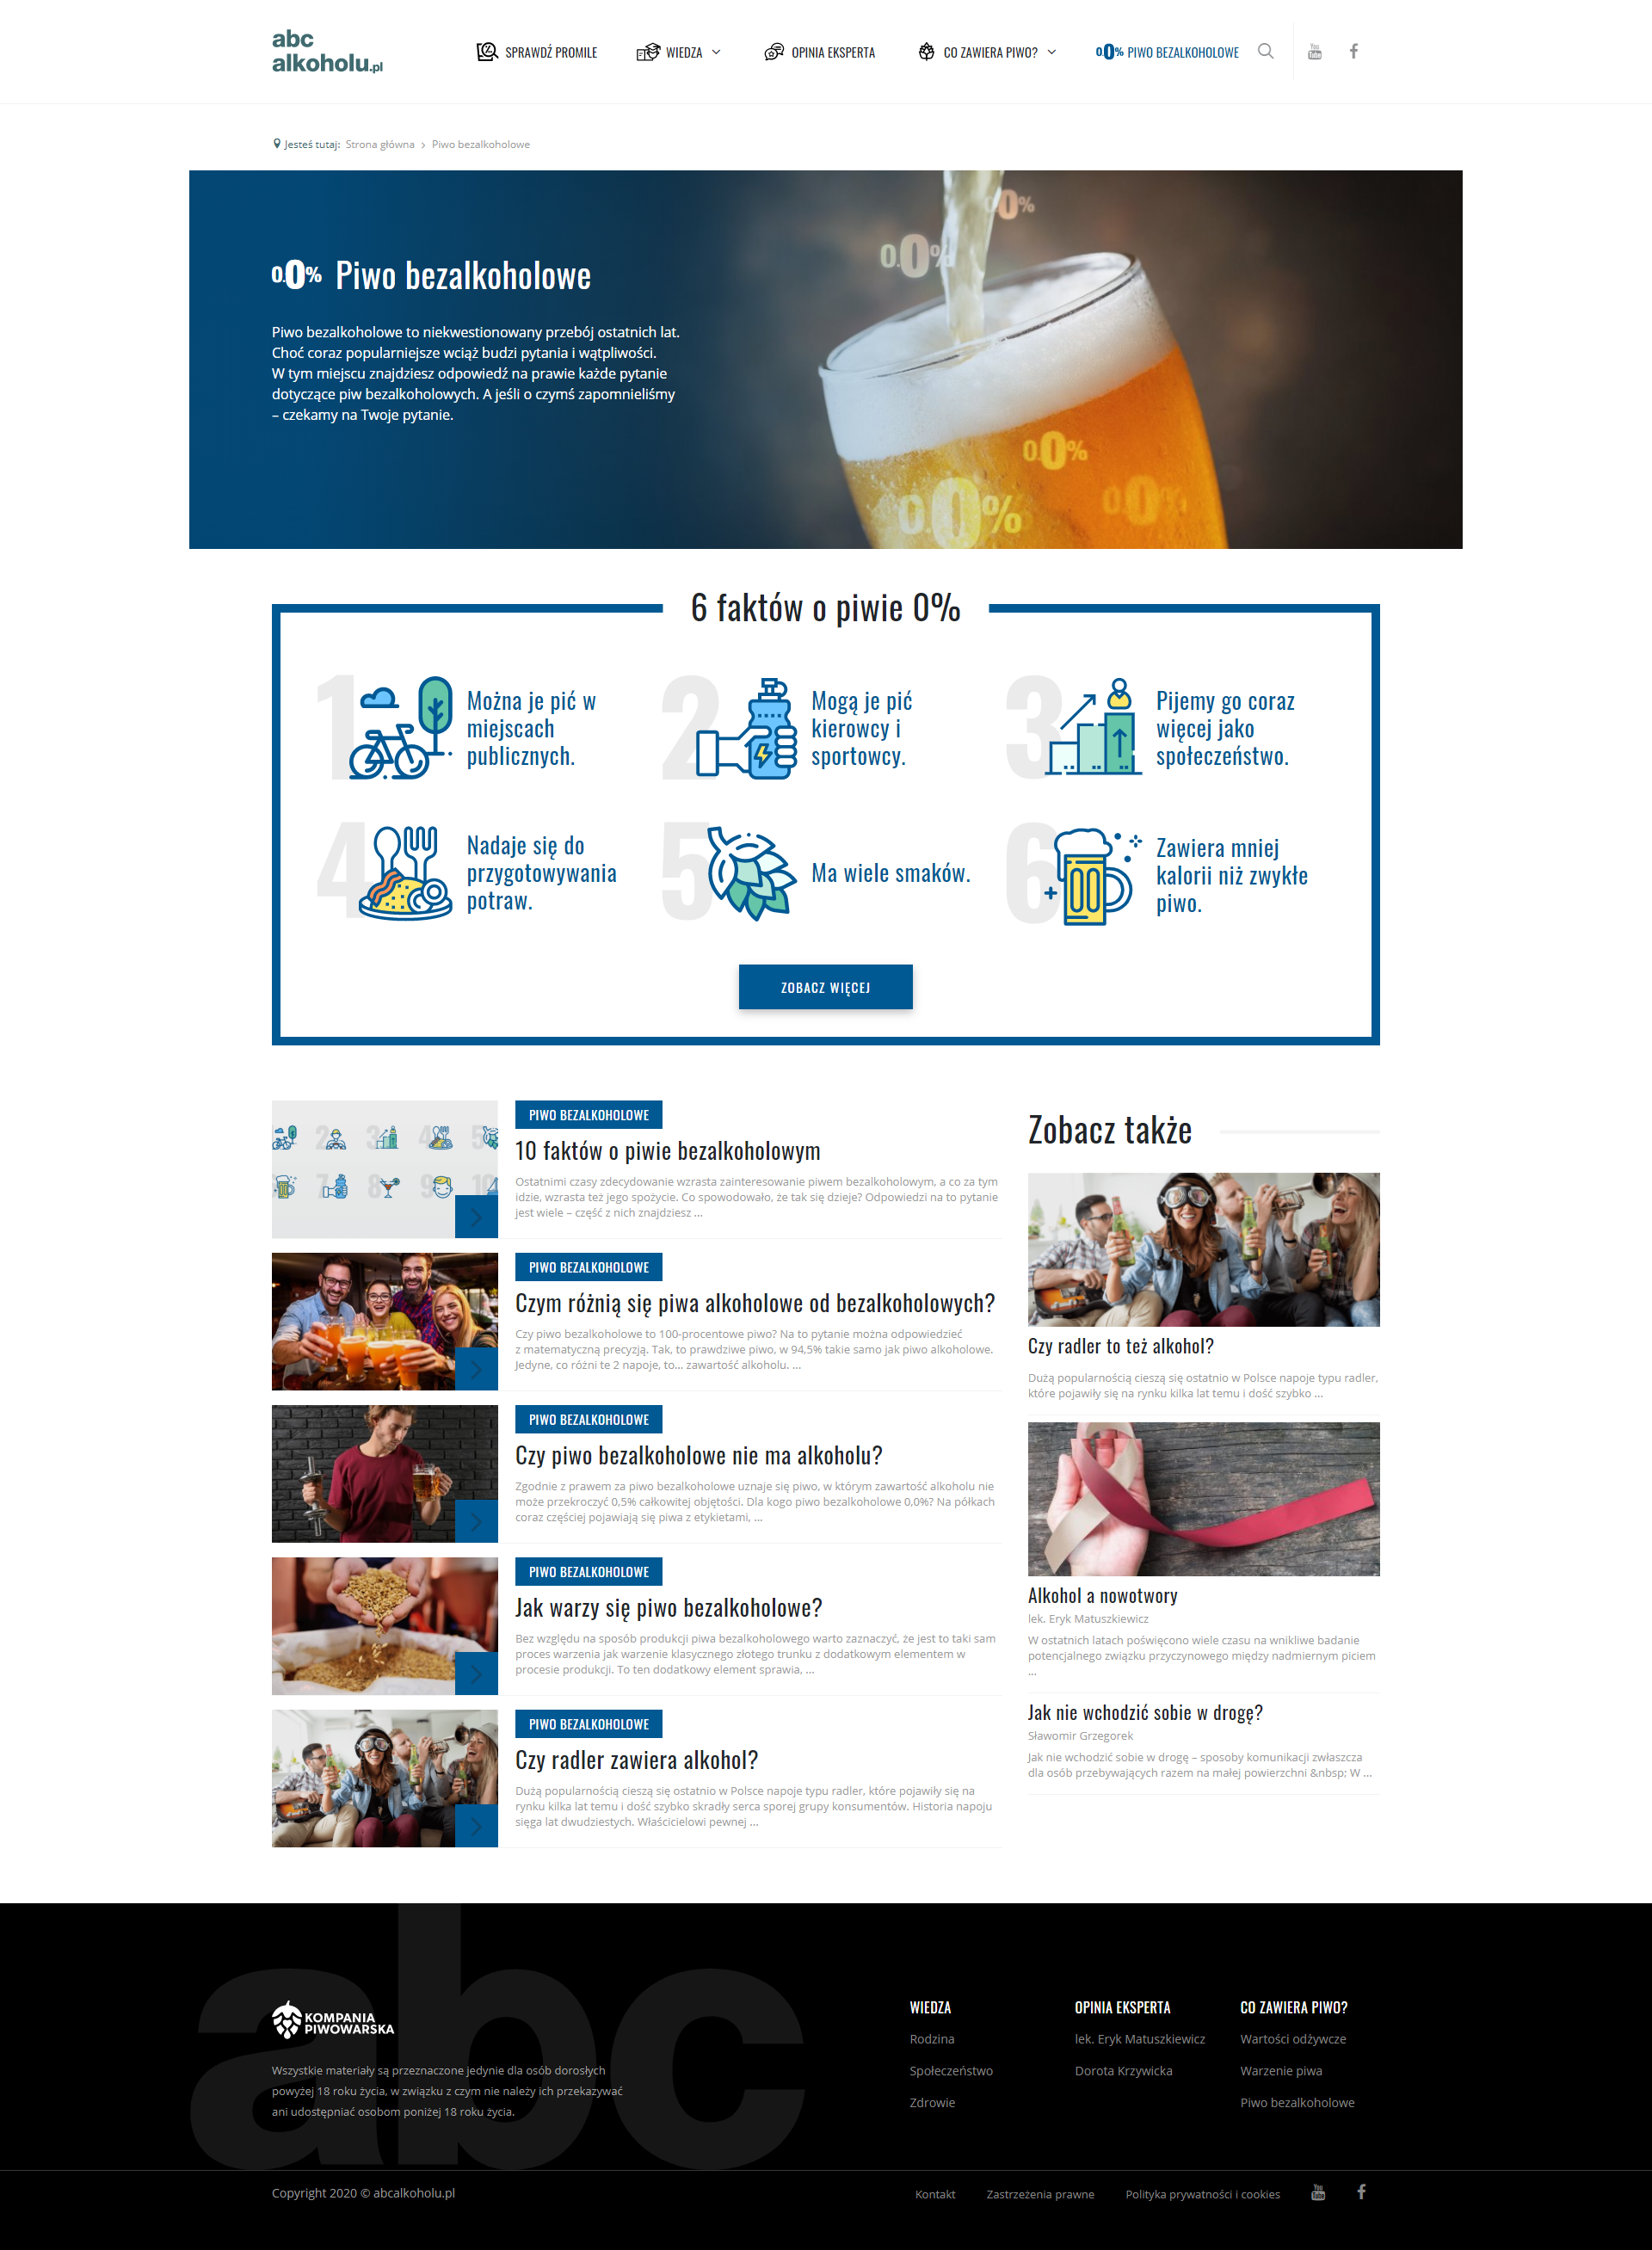 Portal abcalkoholu.pl z kompendium wiedzy o piwie bezalkoholowym